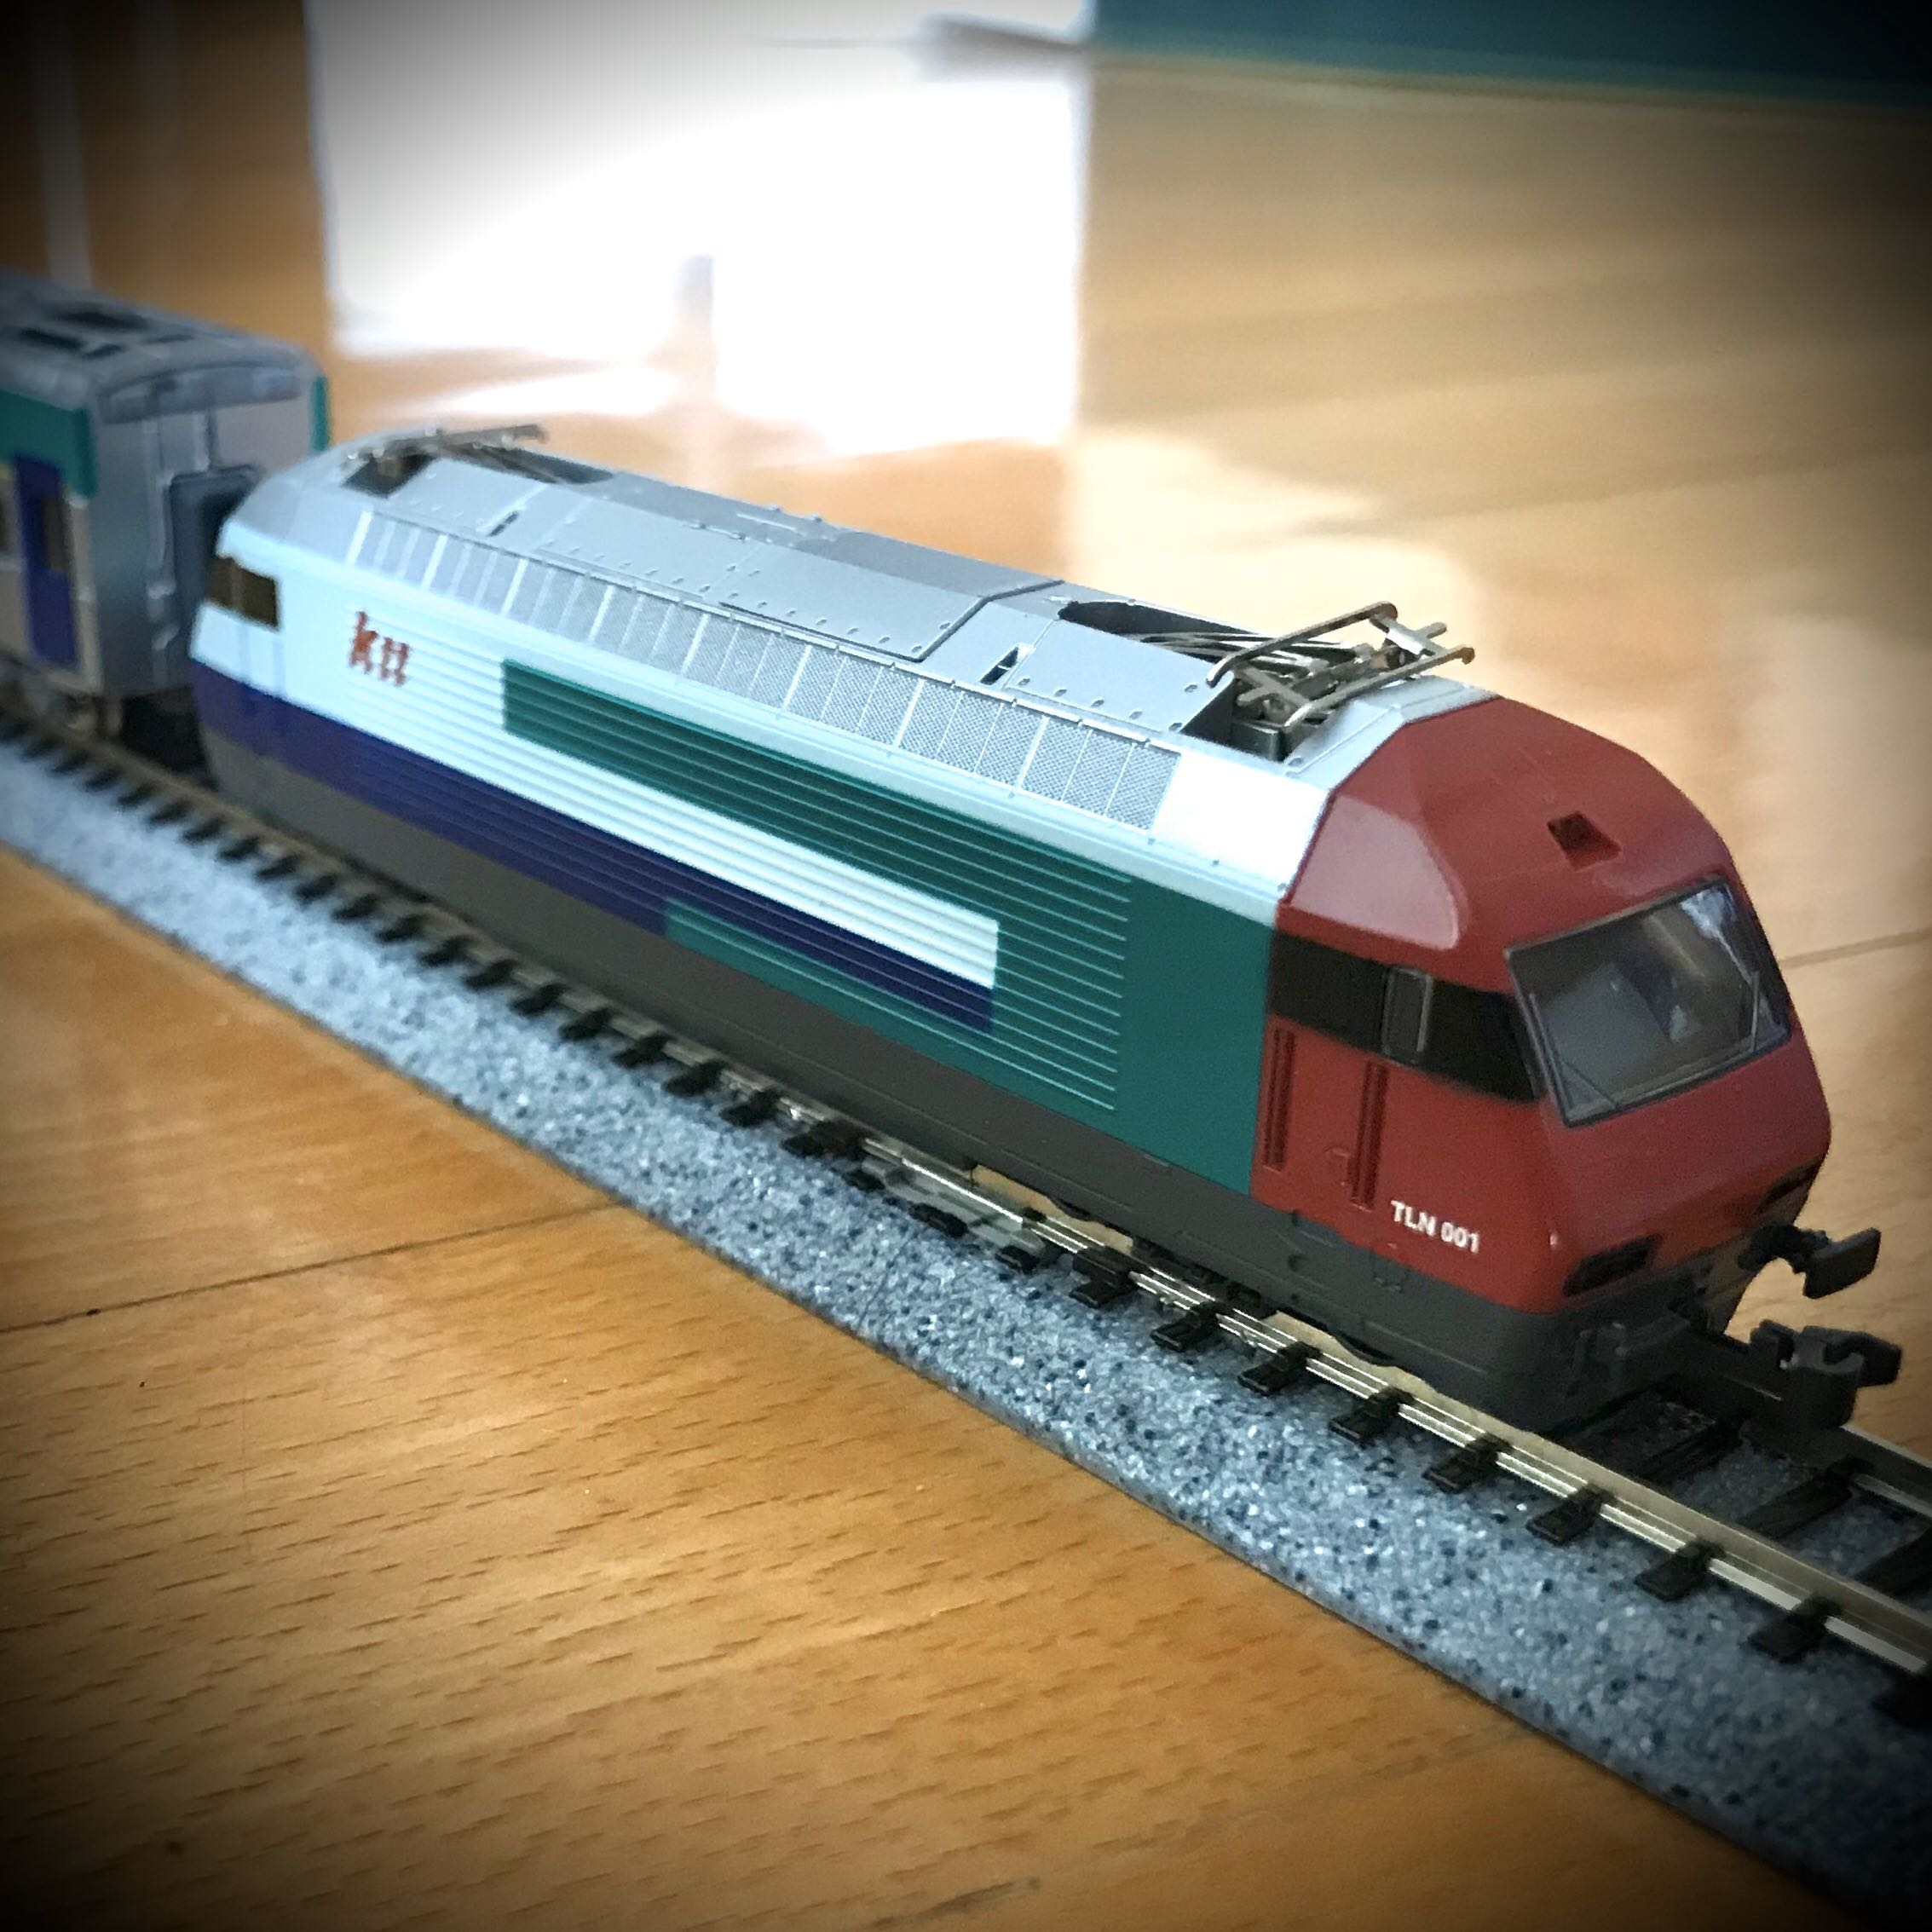 HOゲージ ROCO ロコ Ktt 香港KCRC 電気機関車 - 鉄道模型